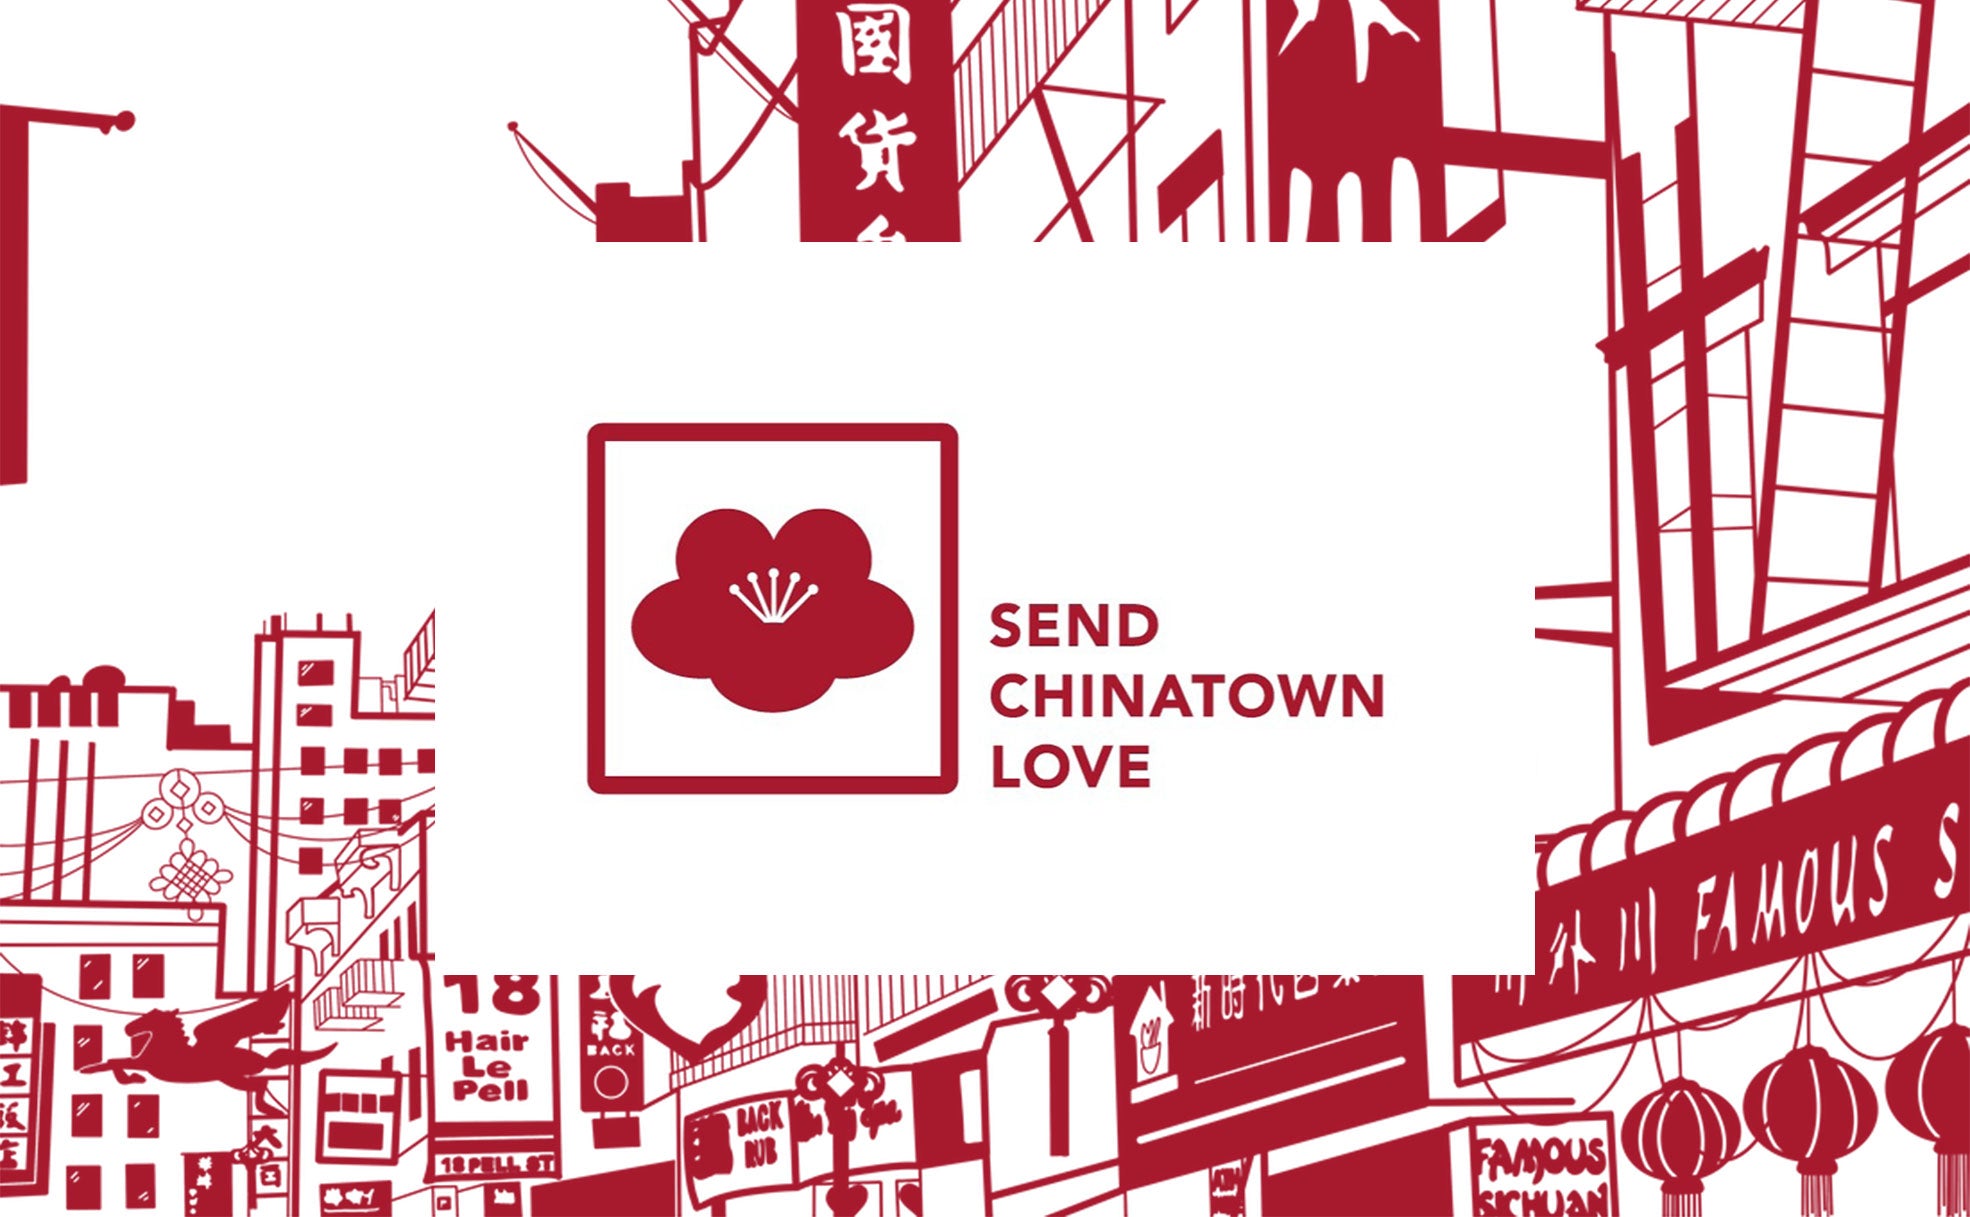 Send Chinatown Love